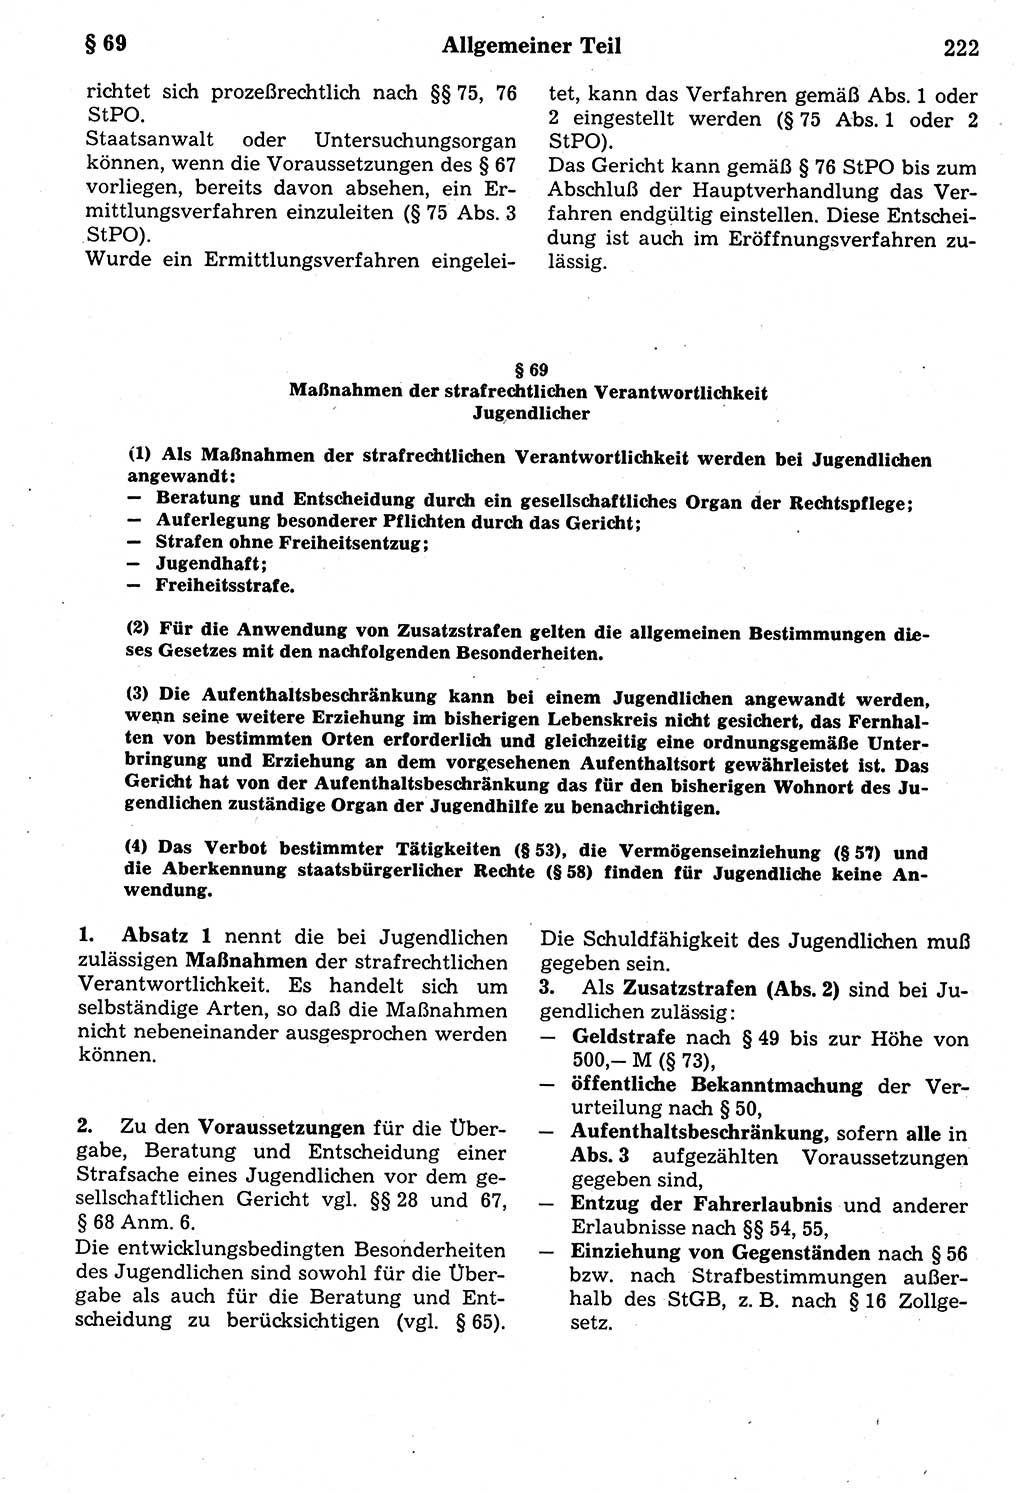 Strafrecht der Deutschen Demokratischen Republik (DDR), Kommentar zum Strafgesetzbuch (StGB) 1987, Seite 222 (Strafr. DDR Komm. StGB 1987, S. 222)